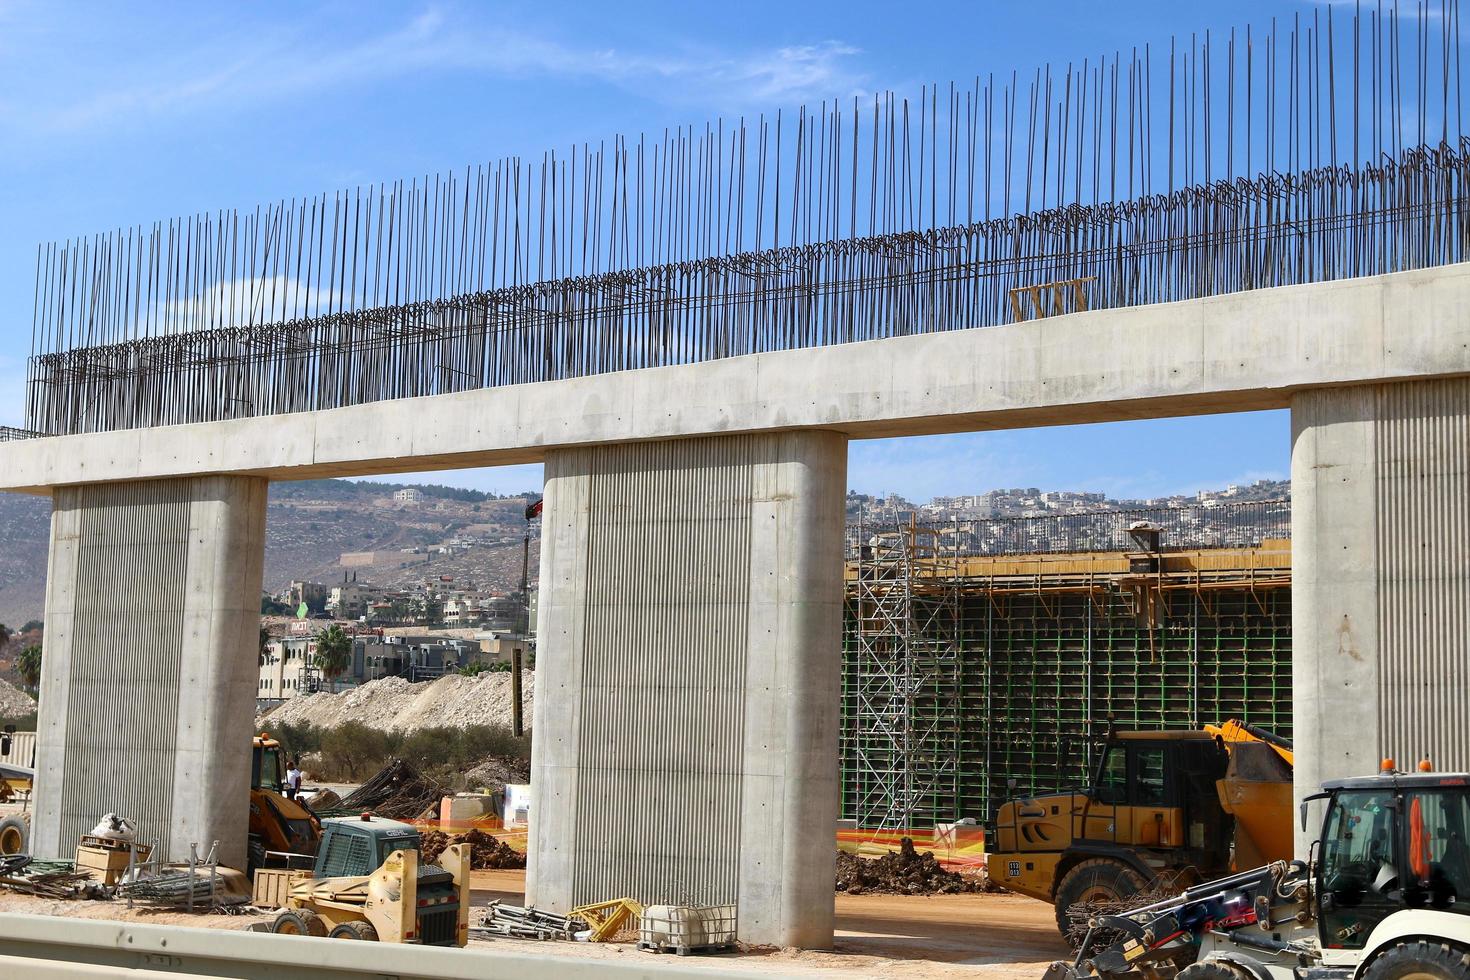 haifa israel 1 de abril de 2019 grande ponte rodoviária do outro lado do rio foto